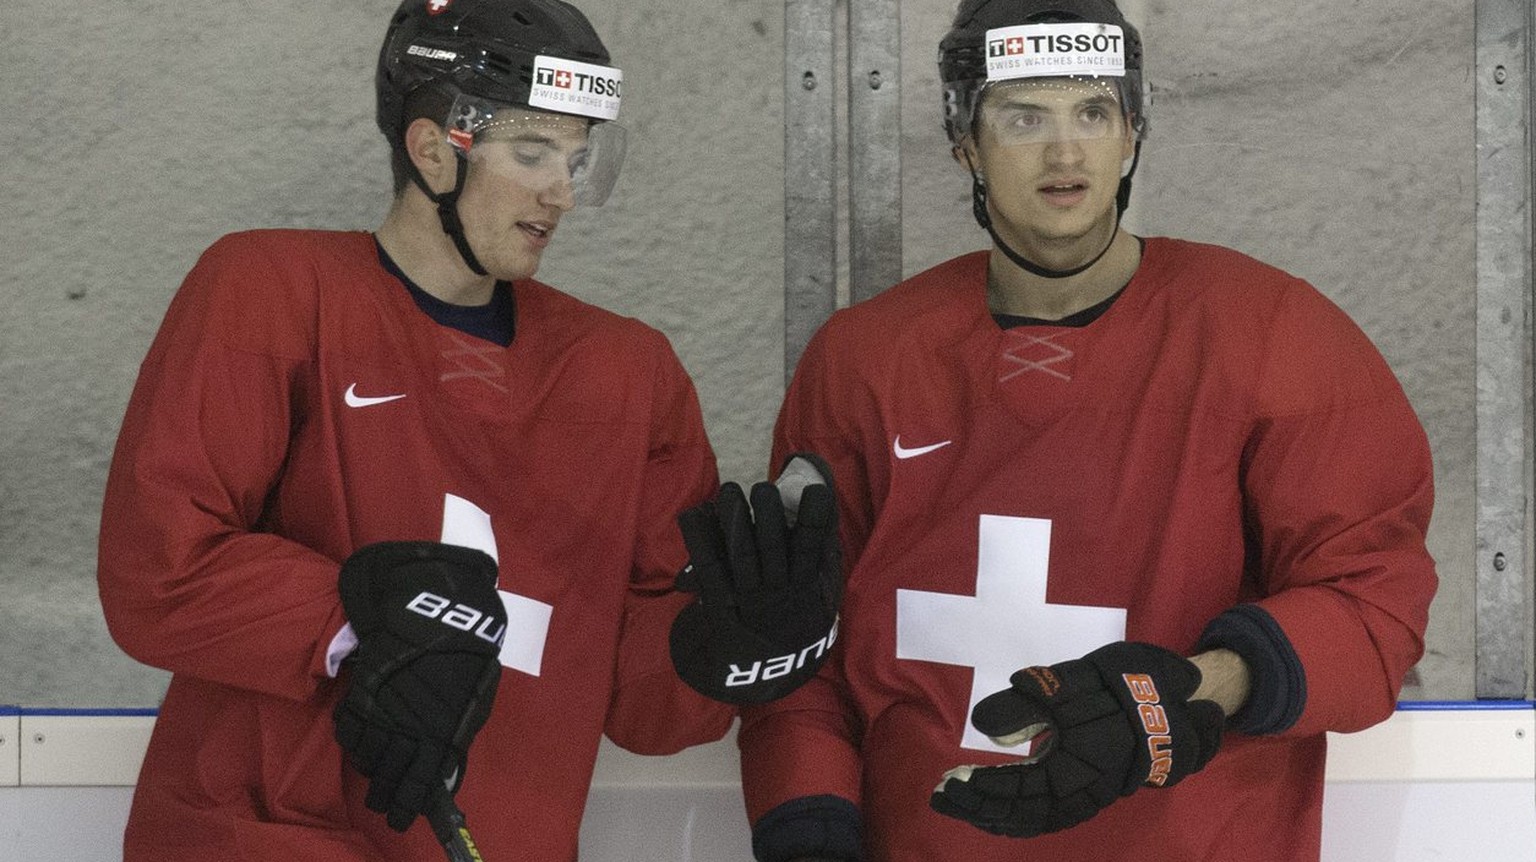 Die Schweizer Eishockey Nationalspieler Roman Josi, links, und Luca Sbisa nehmen an einem Training teil, am Freitag 11. Mai 2012, in einer Nebenhalle der Hartwall Arena in Helsinki. (KEYSTONE/Peter Sc ...